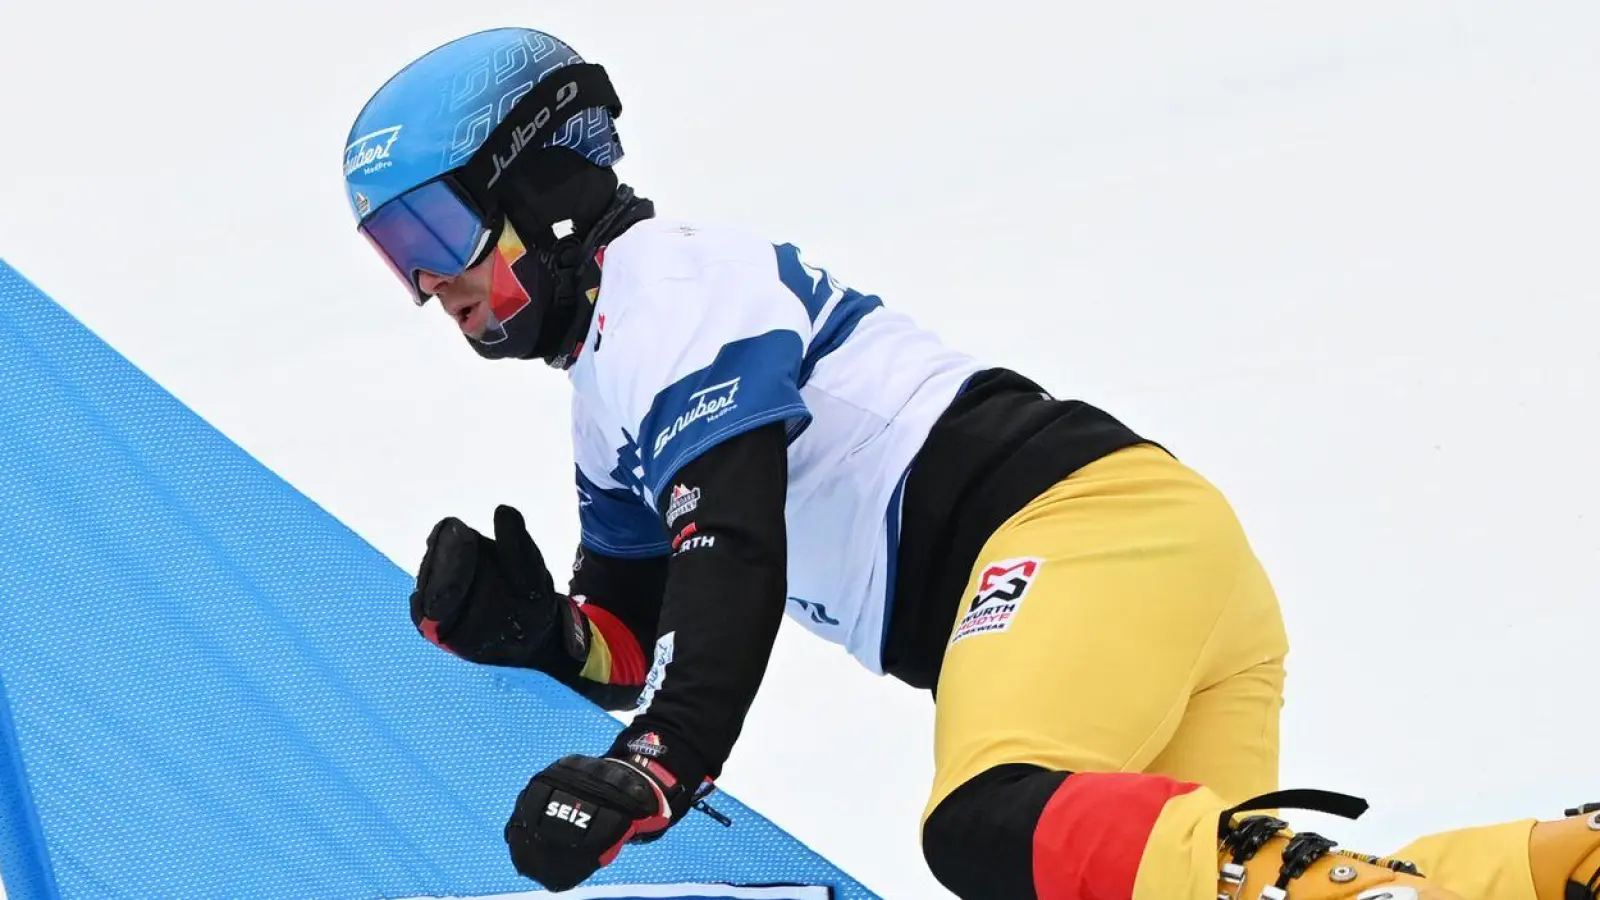 Snowboard: Weltcup, Parallel-Slalom, Mixed. Stefan Baumeister aus Deutschland startet im Mixed Team Wettbewerb. (Foto: Angelika Warmuth/dpa)